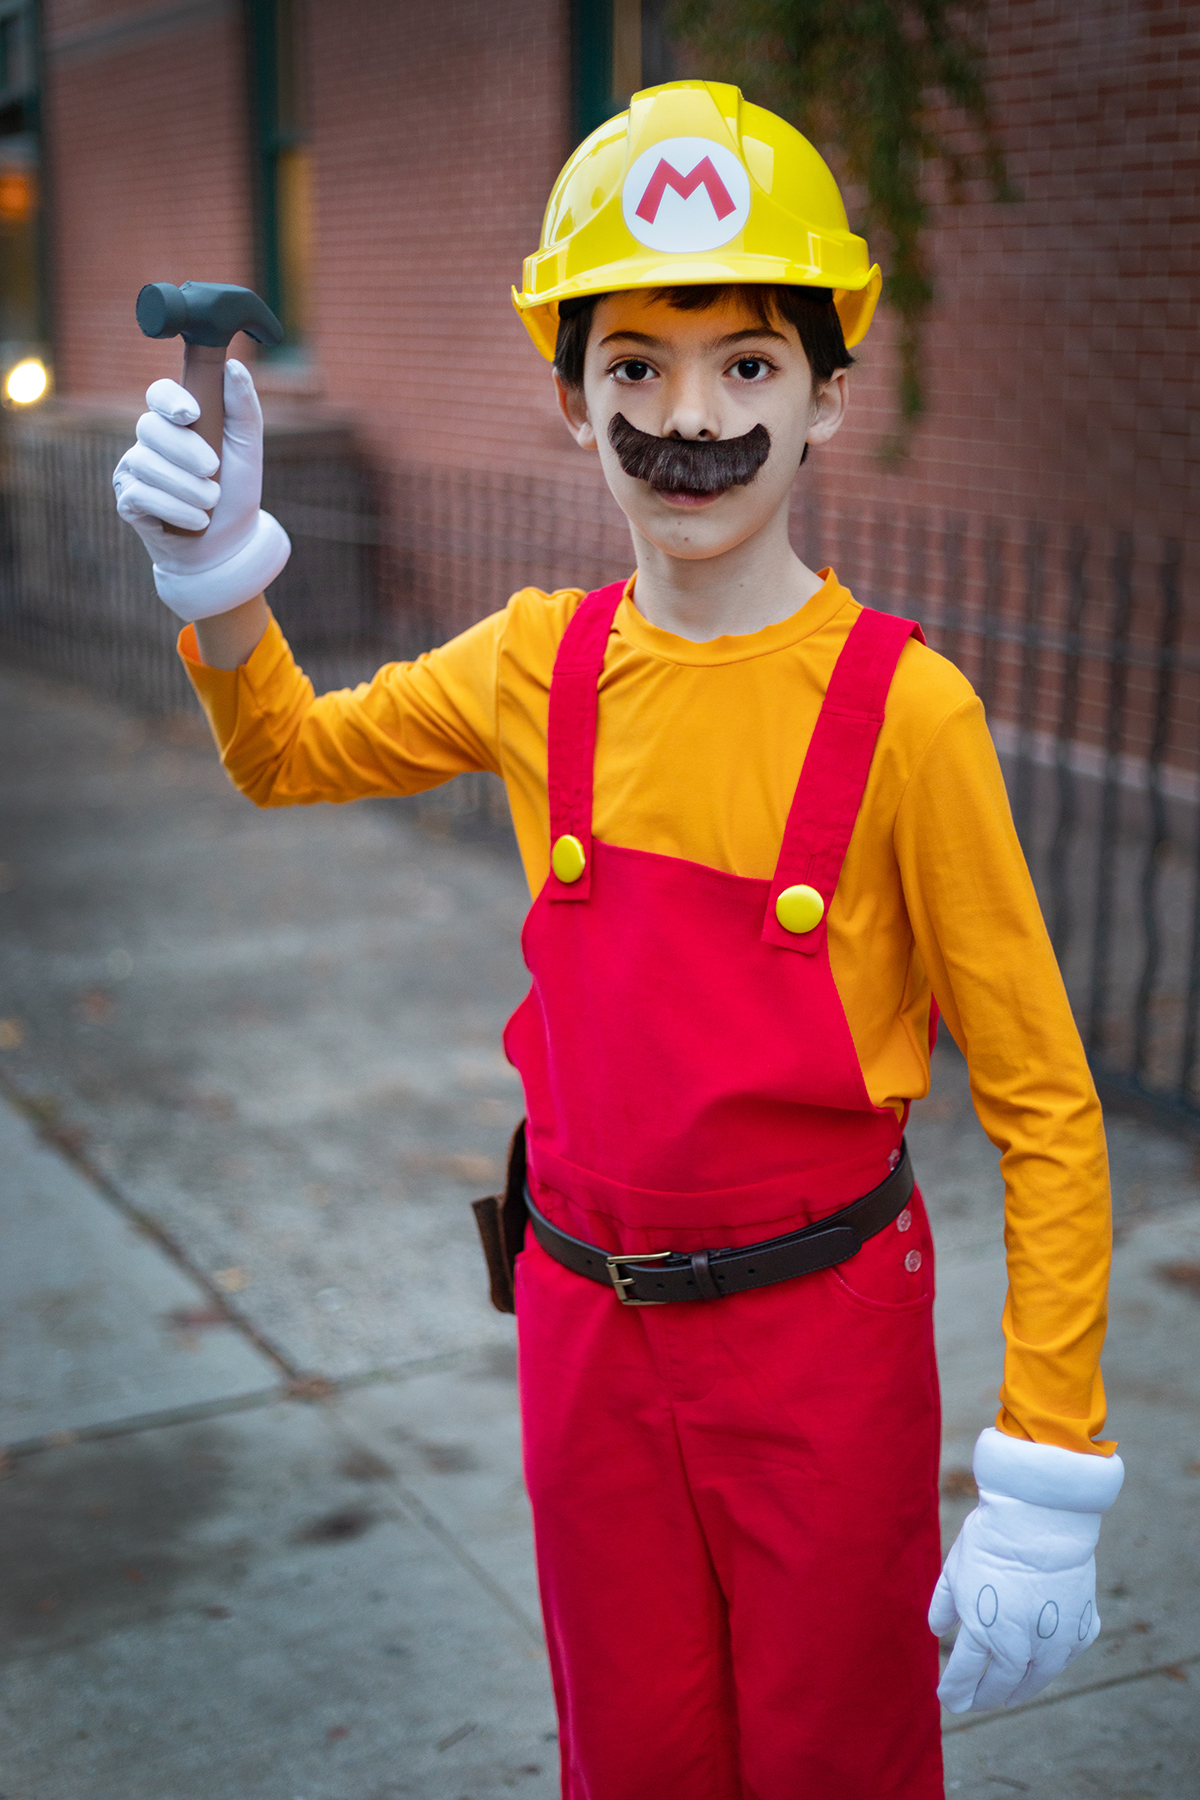 Super Mario Maker Costume - The Serial Hobbyist Girl